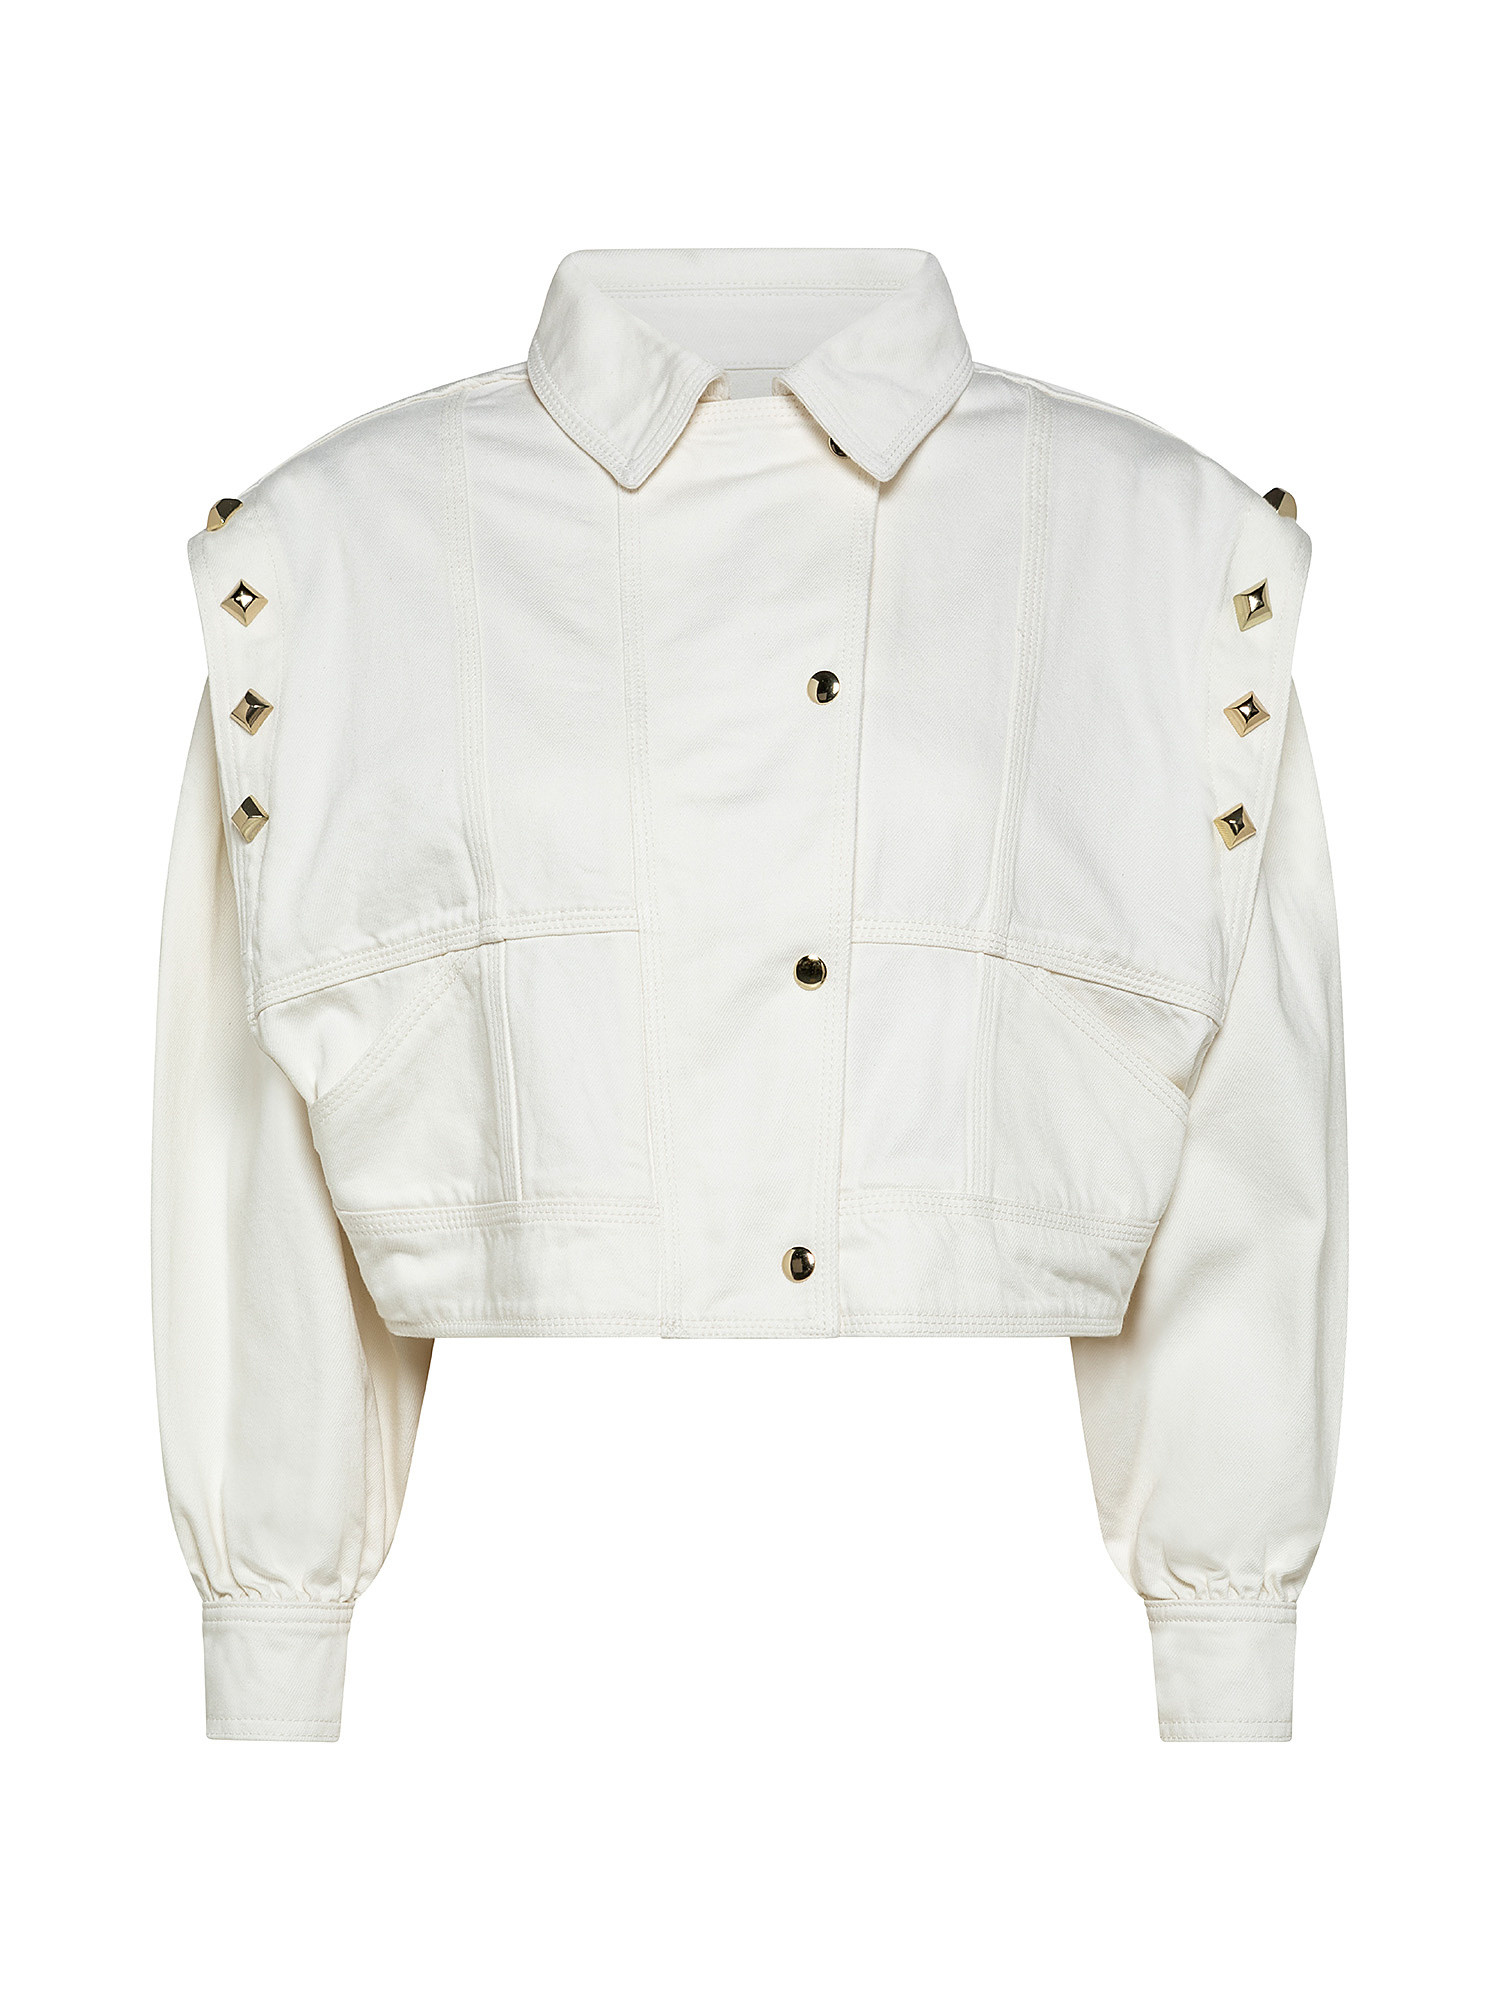 Studded jacket, White, large image number 0